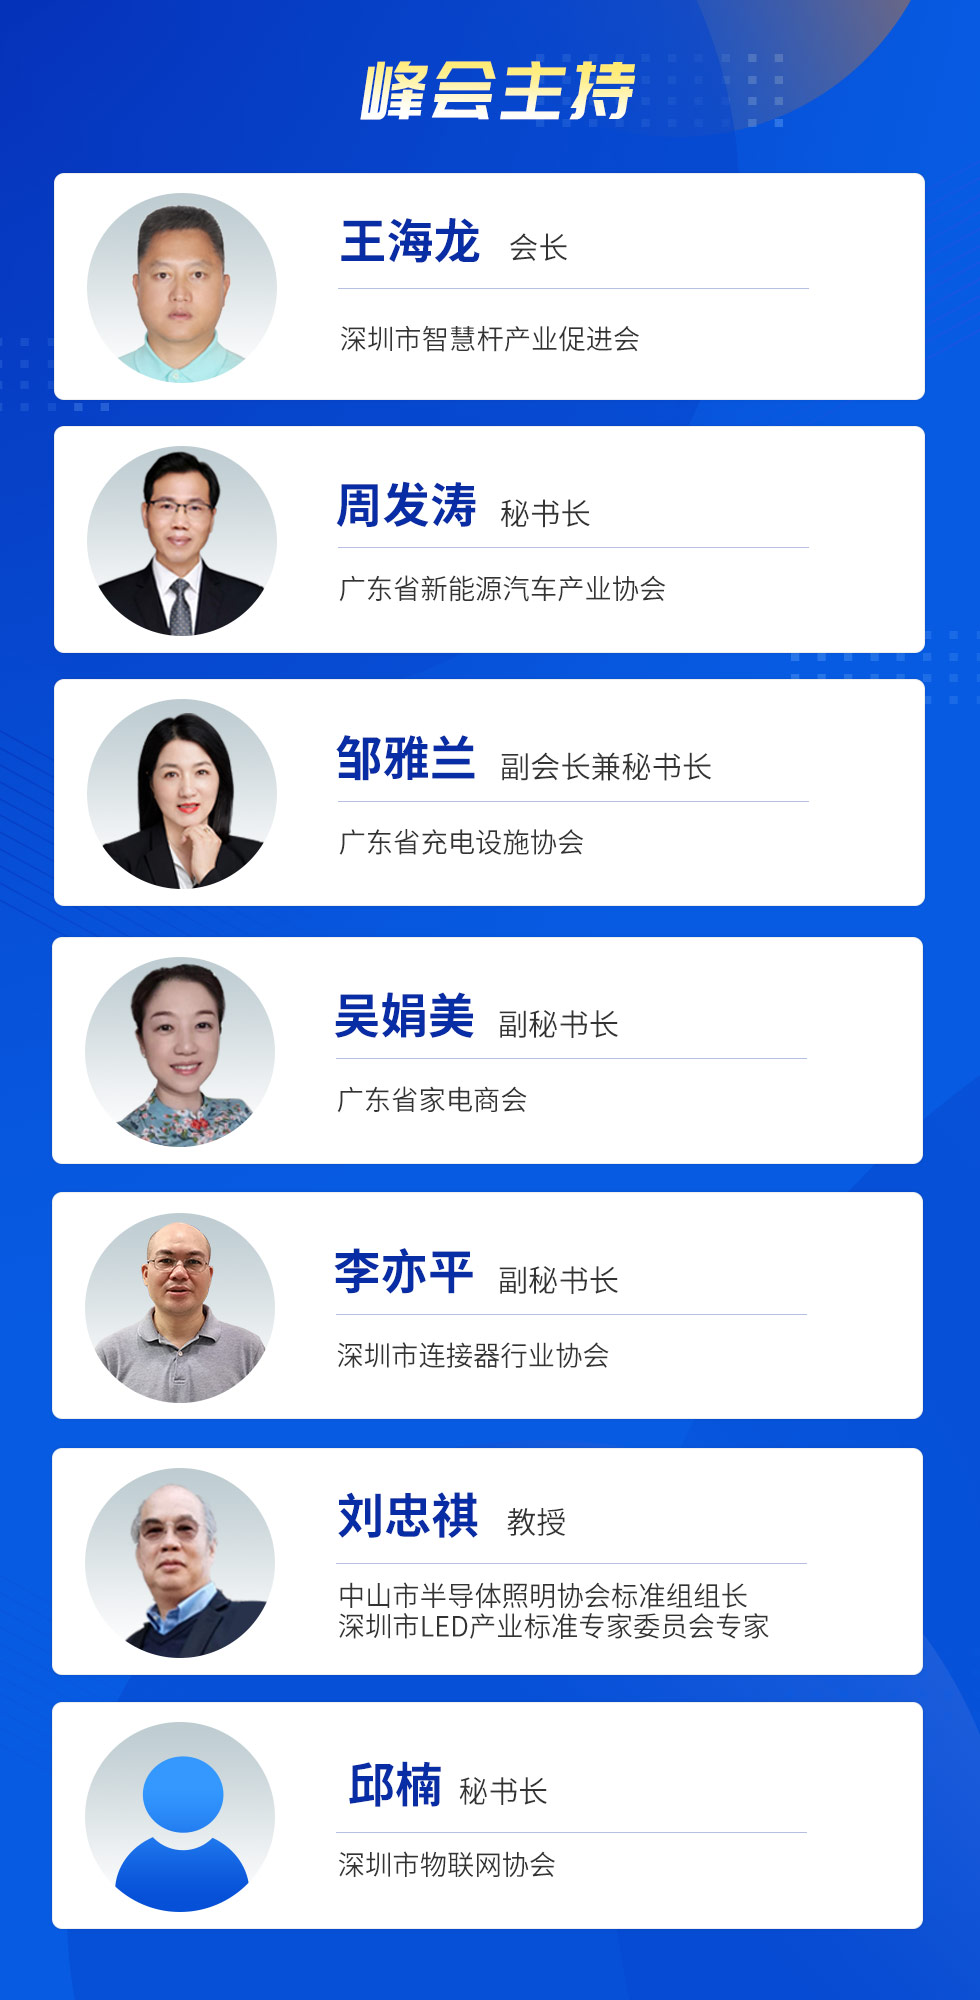 中国电子热点解决方案峰会|40+专家共话5G锂电池/超充/AIoT与智能家居